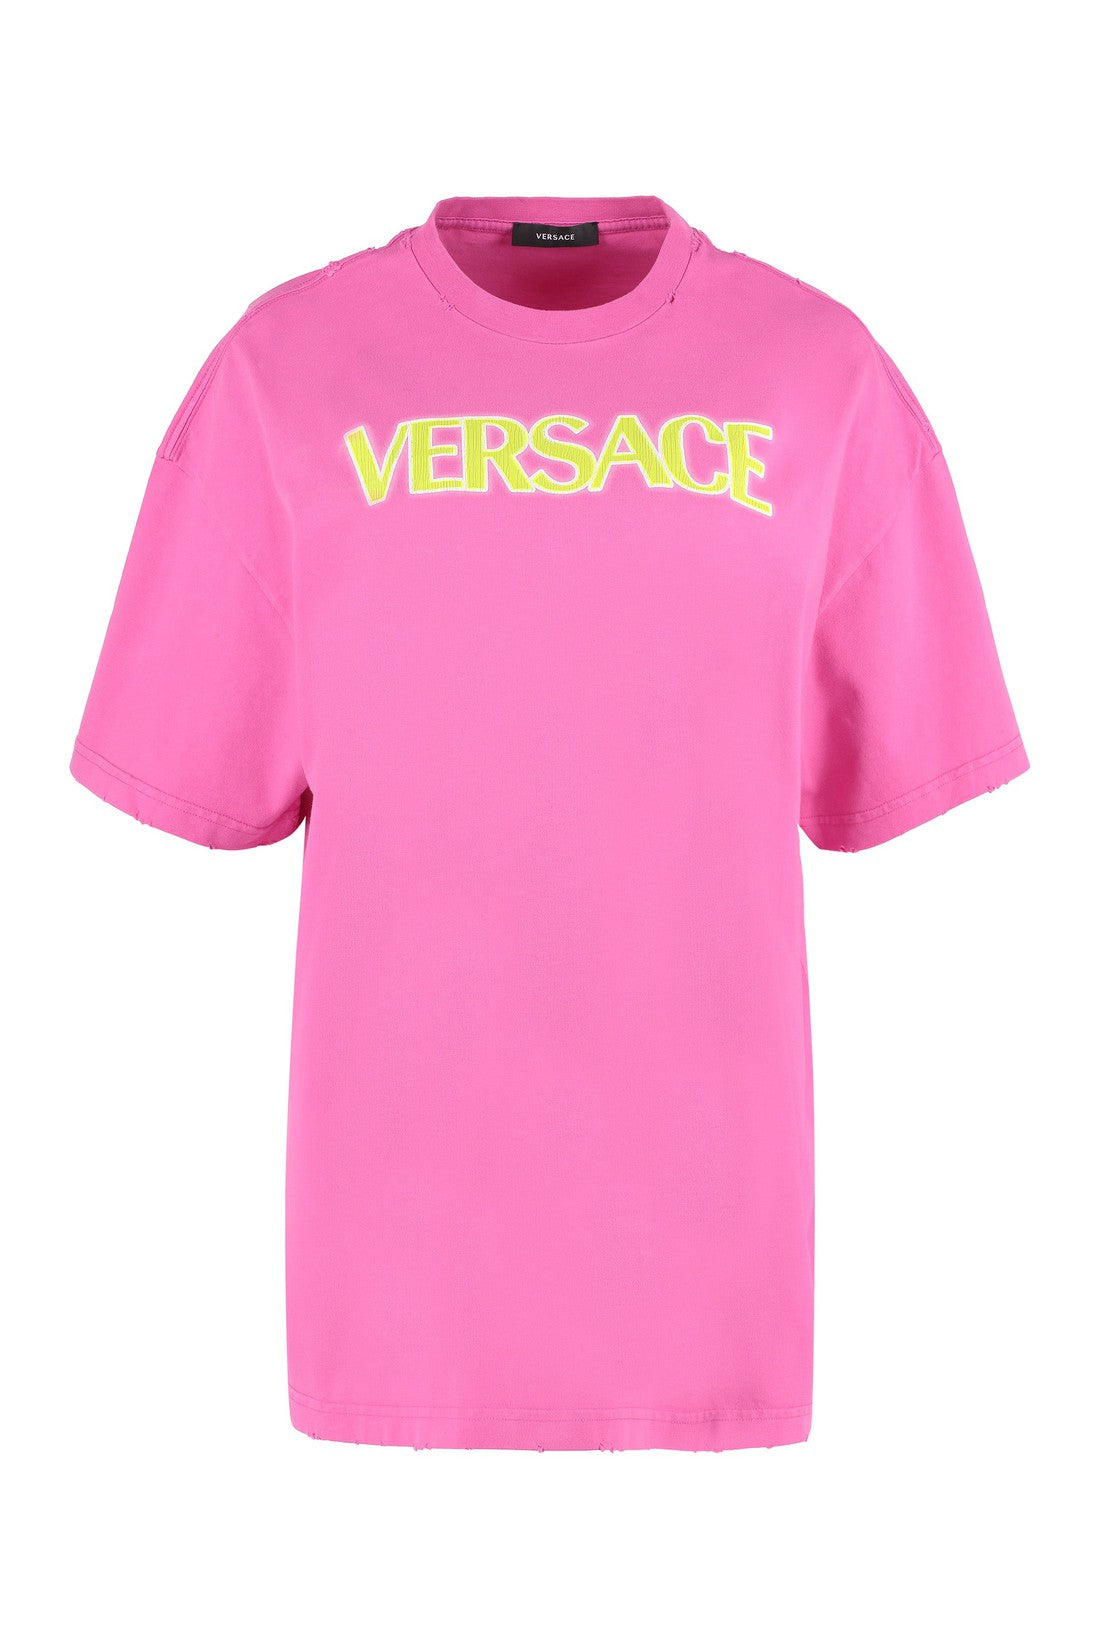 Versace-OUTLET-SALE-Logo cotton t-shirt-ARCHIVIST